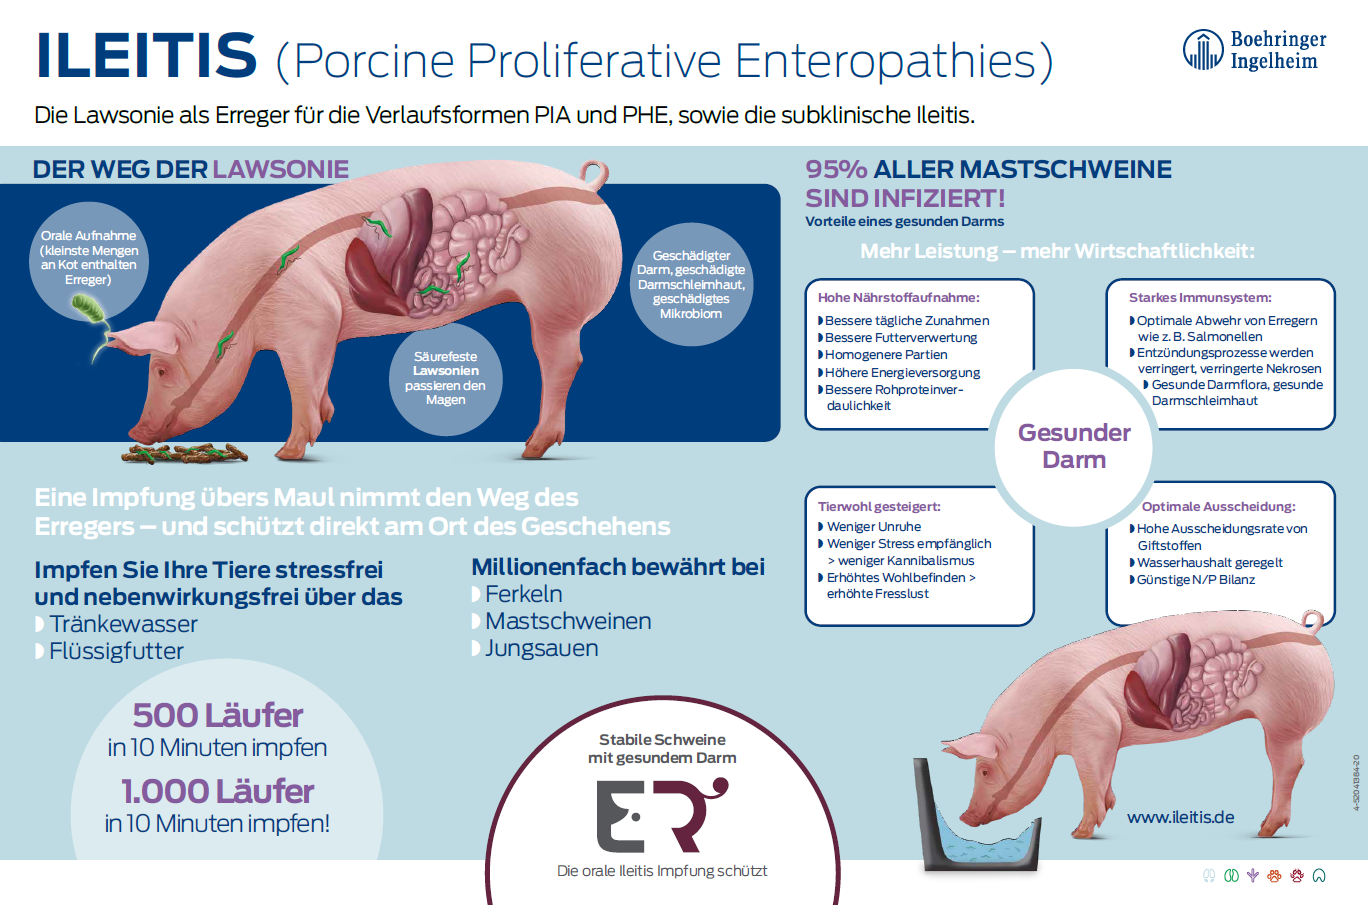 Poster "ILEITIS (Porcine Proliferative Enteropathies)"